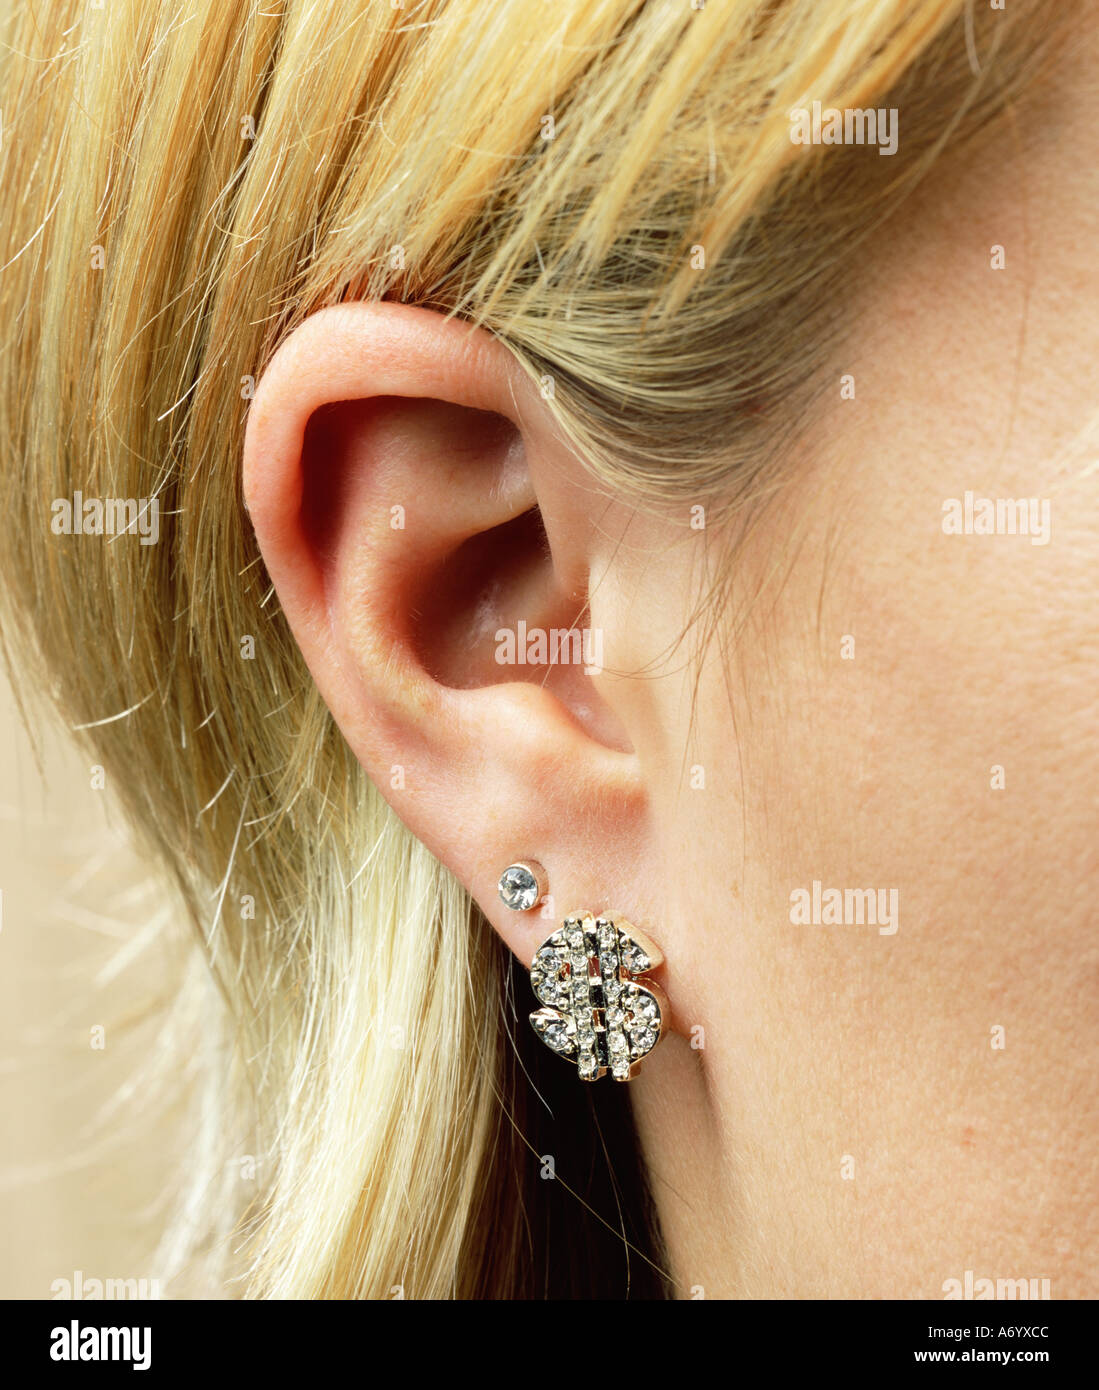 Dollar earring on woman s ear Stock Photo